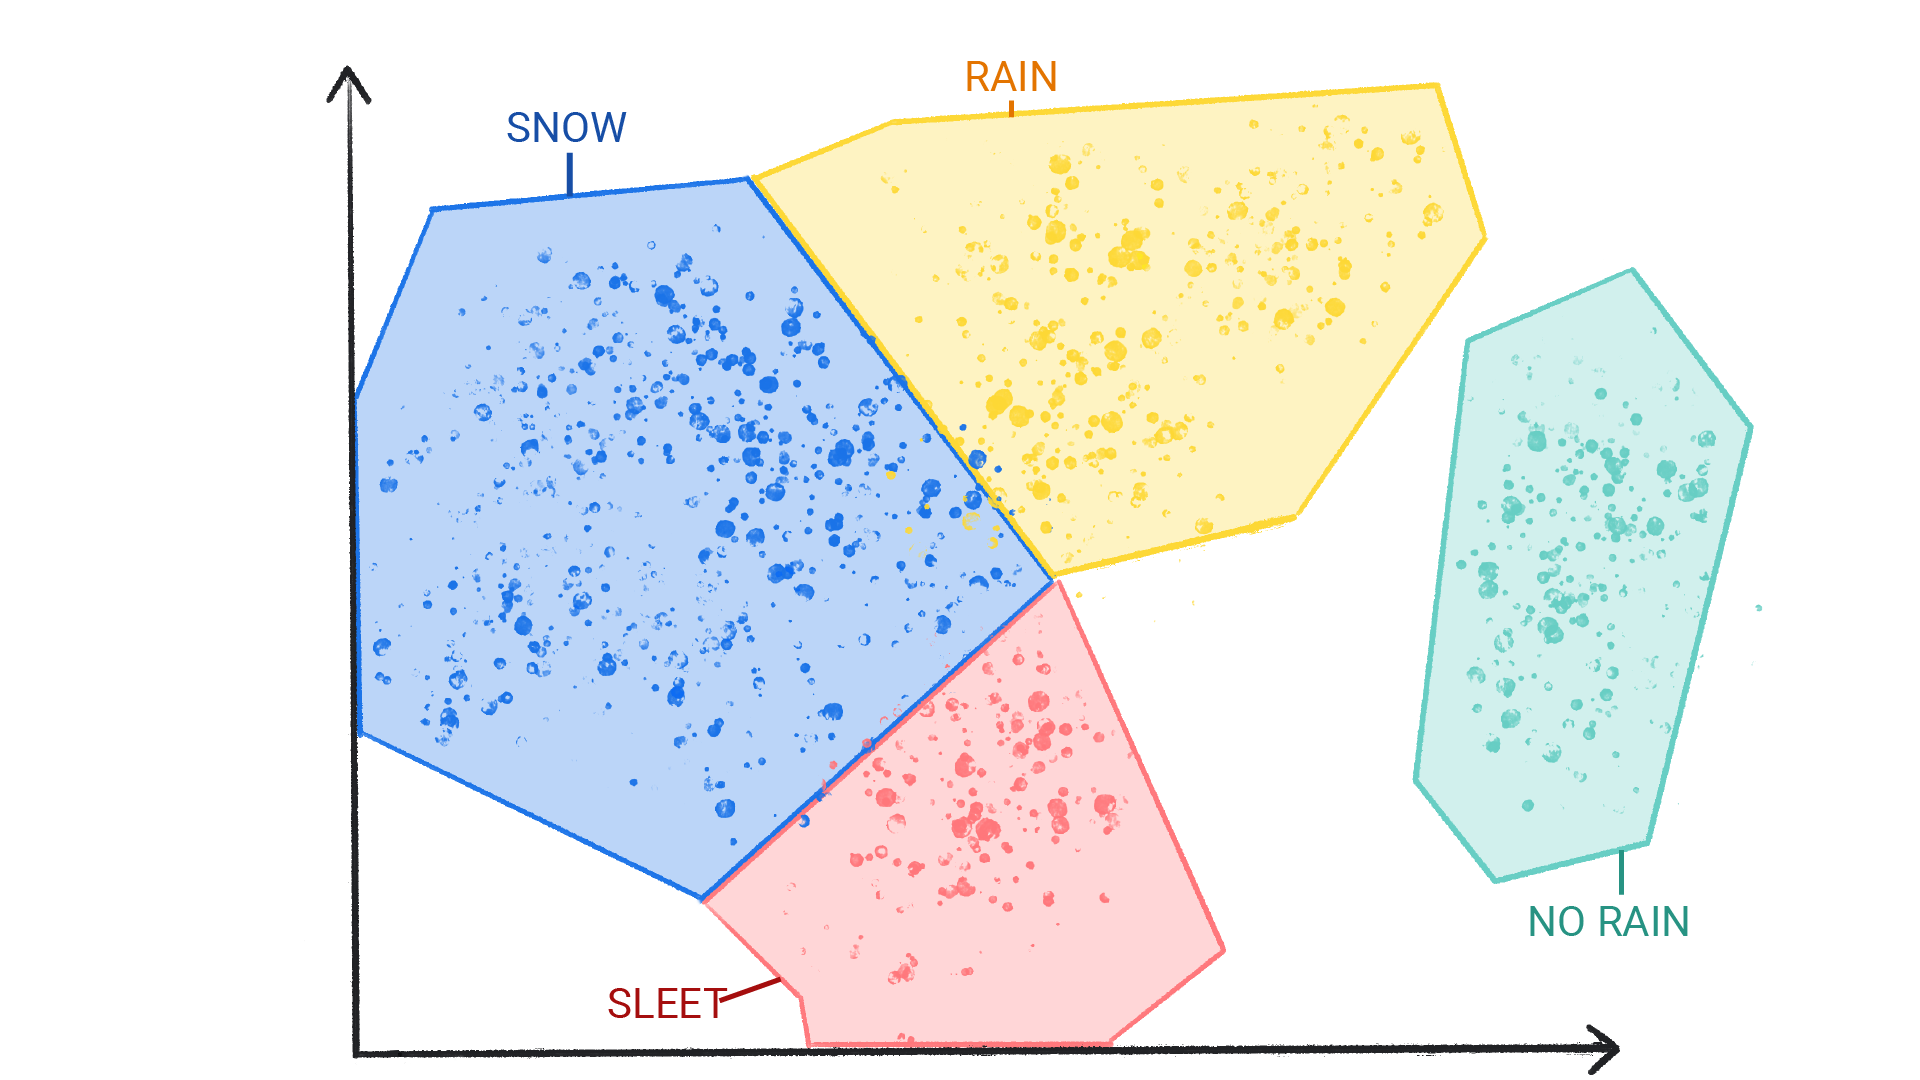 תמונה של נקודות צבעוניות באשכולות שמסומנים כשלג, גשם, ברד וללא גשם, מוקפים בצורות שונות וגובלות זו בזו.